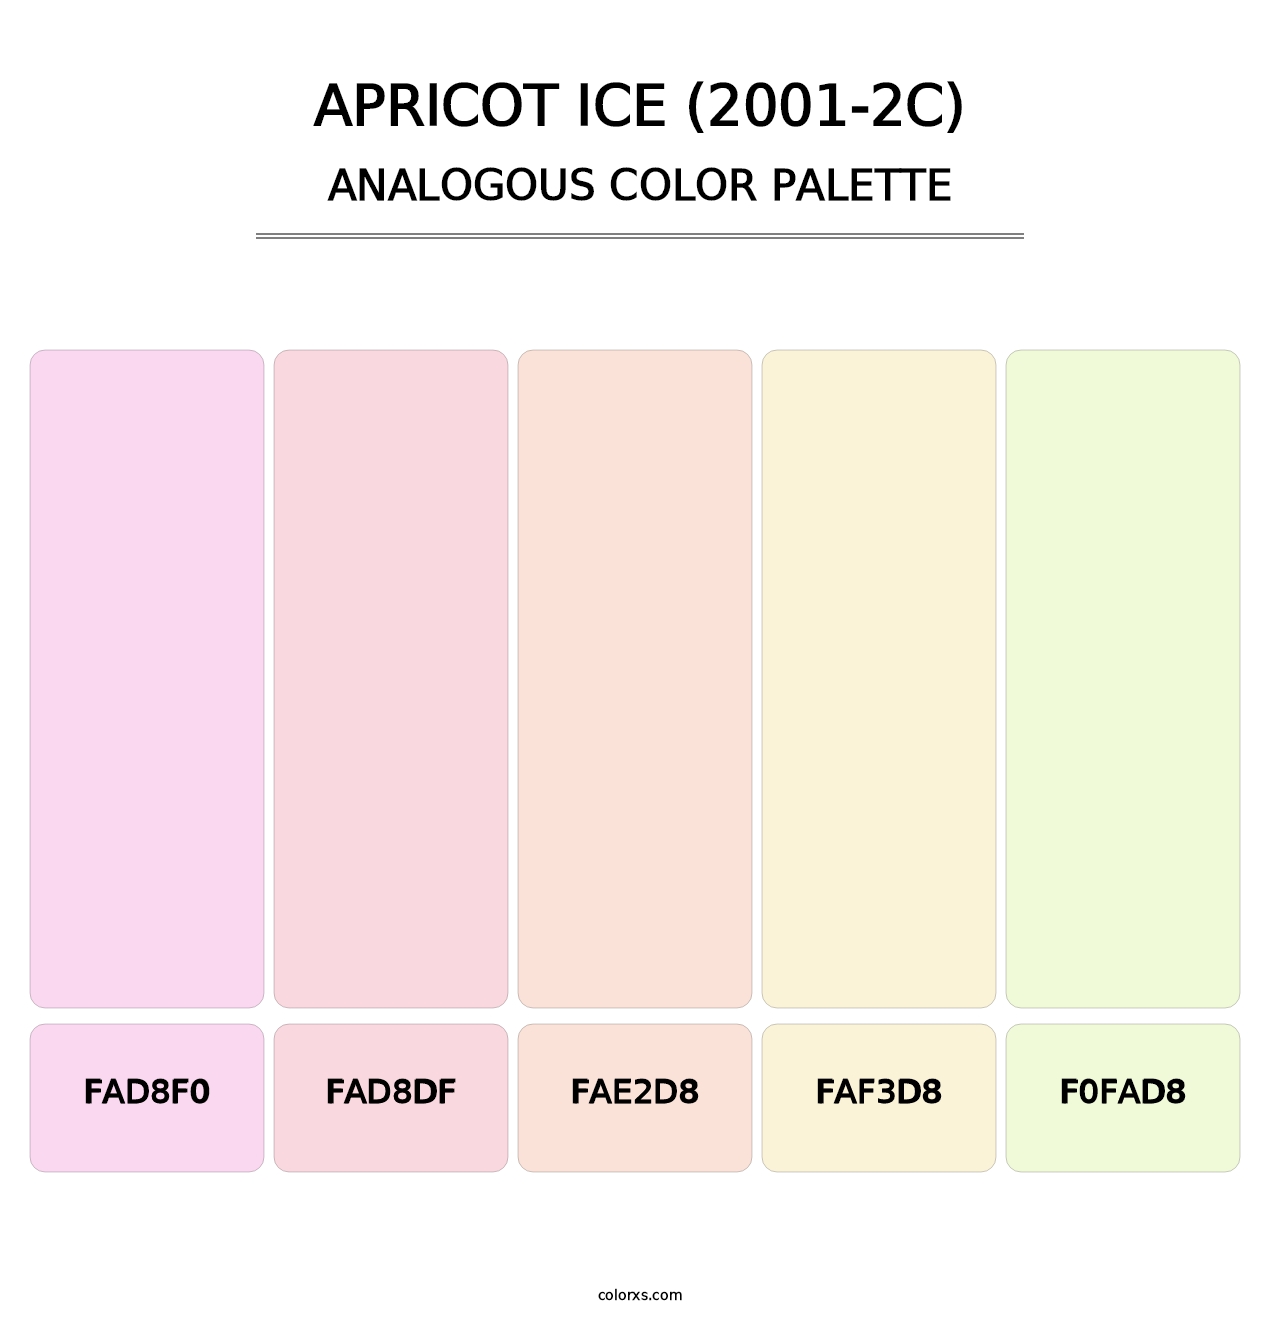 Apricot Ice (2001-2C) - Analogous Color Palette